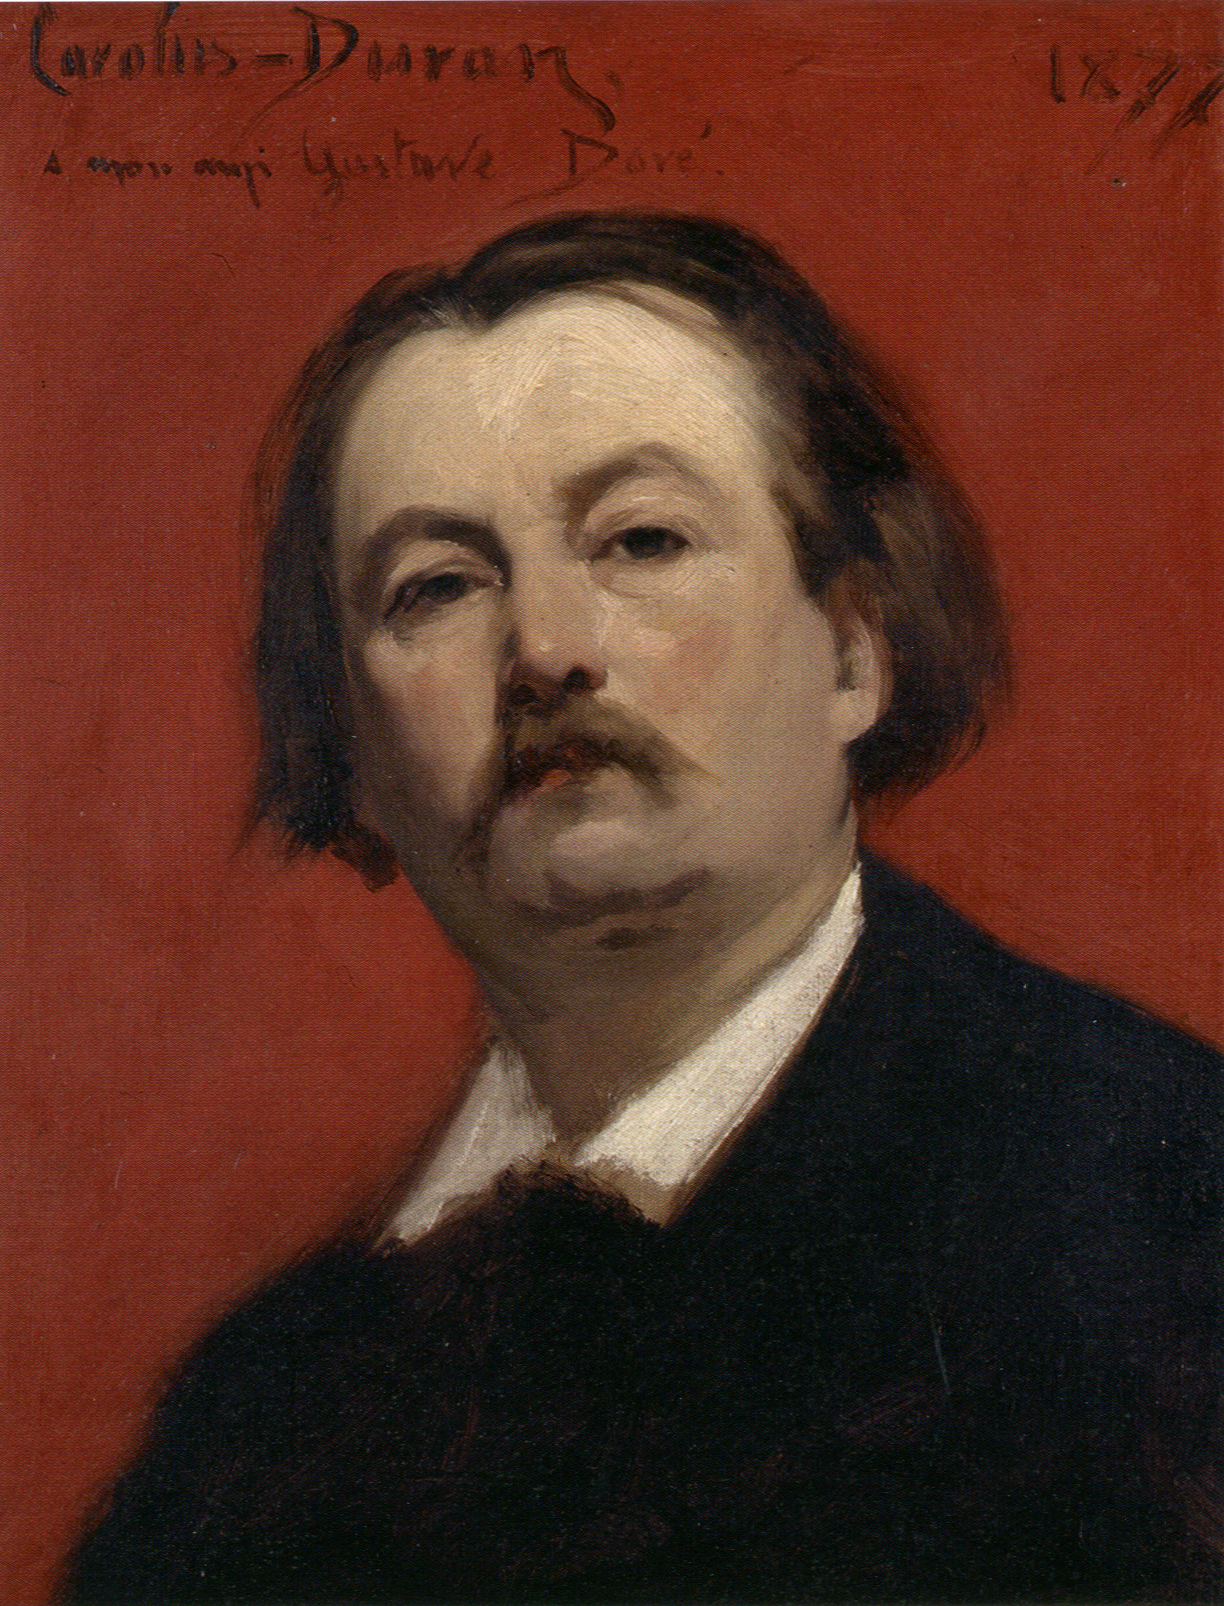 Gustave Doré - Enero 6, 1832 - Enero 23, 1883